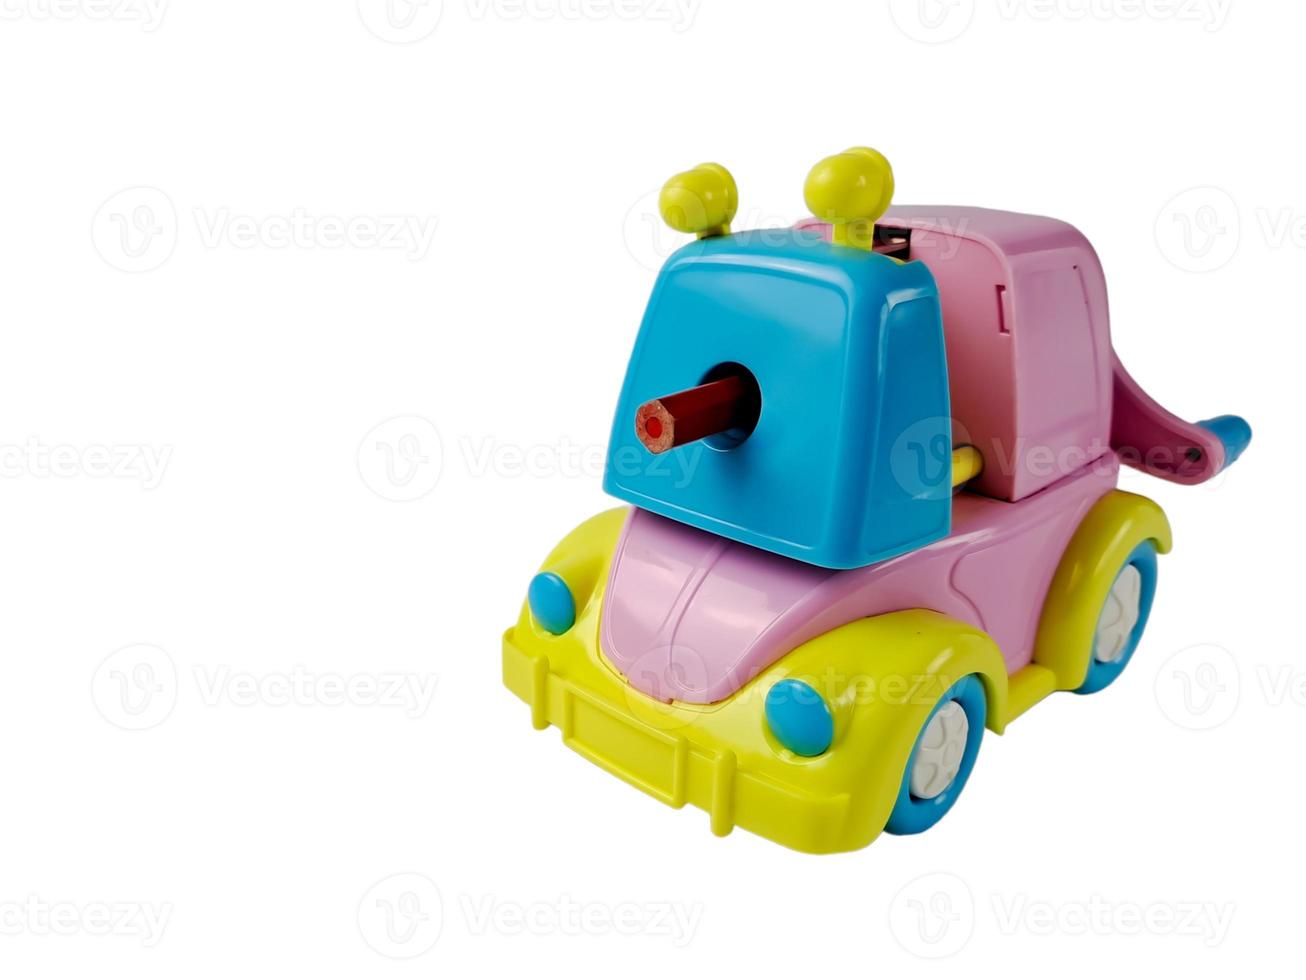 bleistiftspitzer modell spielzeugauto bunt pastell foto